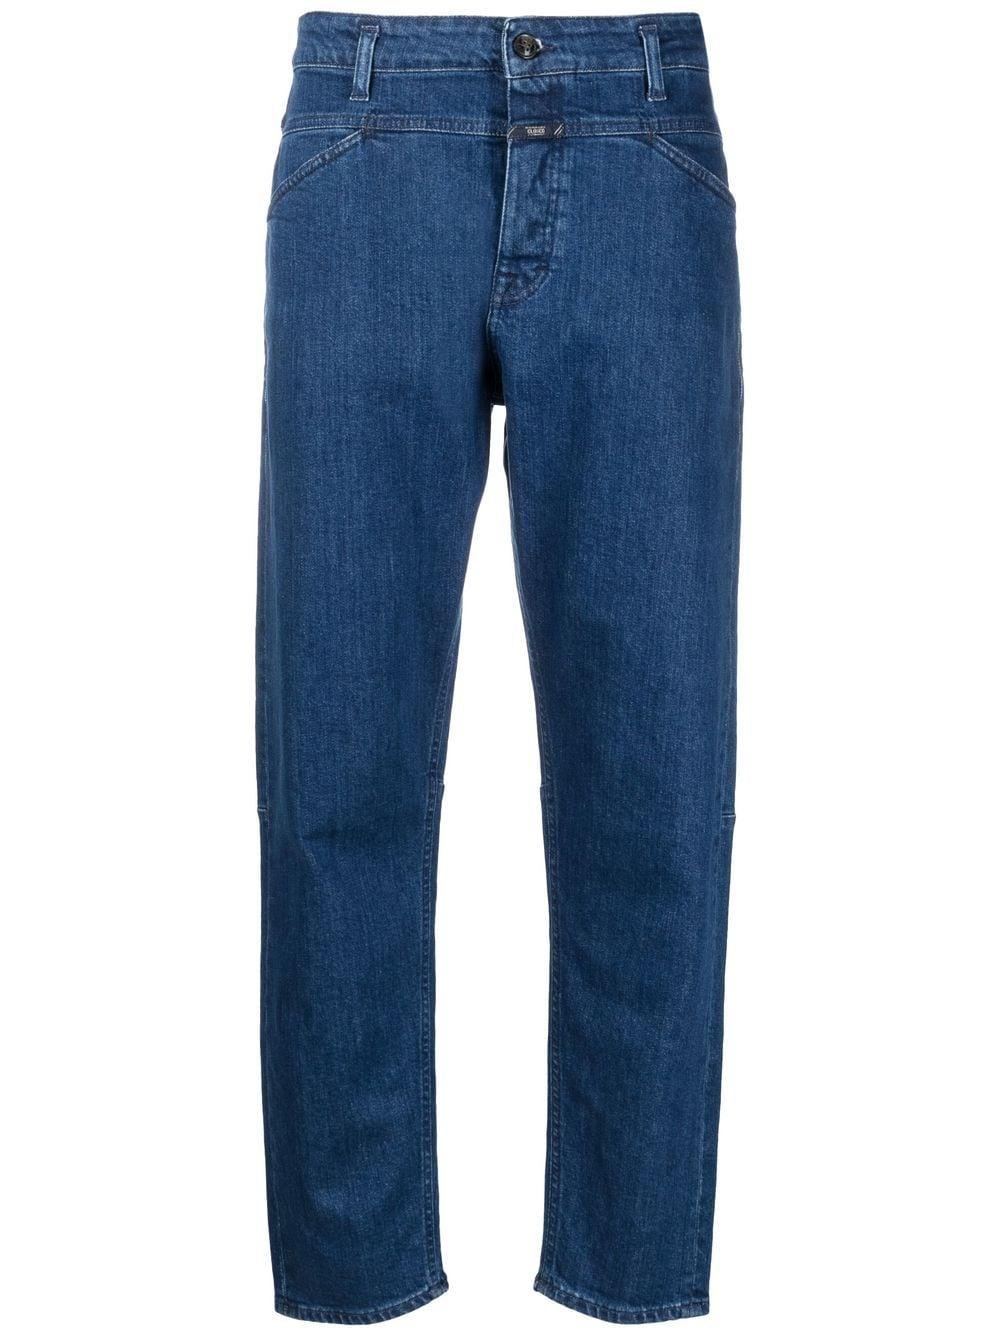 Jeans affusolati Pearl Blu Farfetch Donna Abbigliamento Pantaloni e jeans Jeans Jeans affosulati 